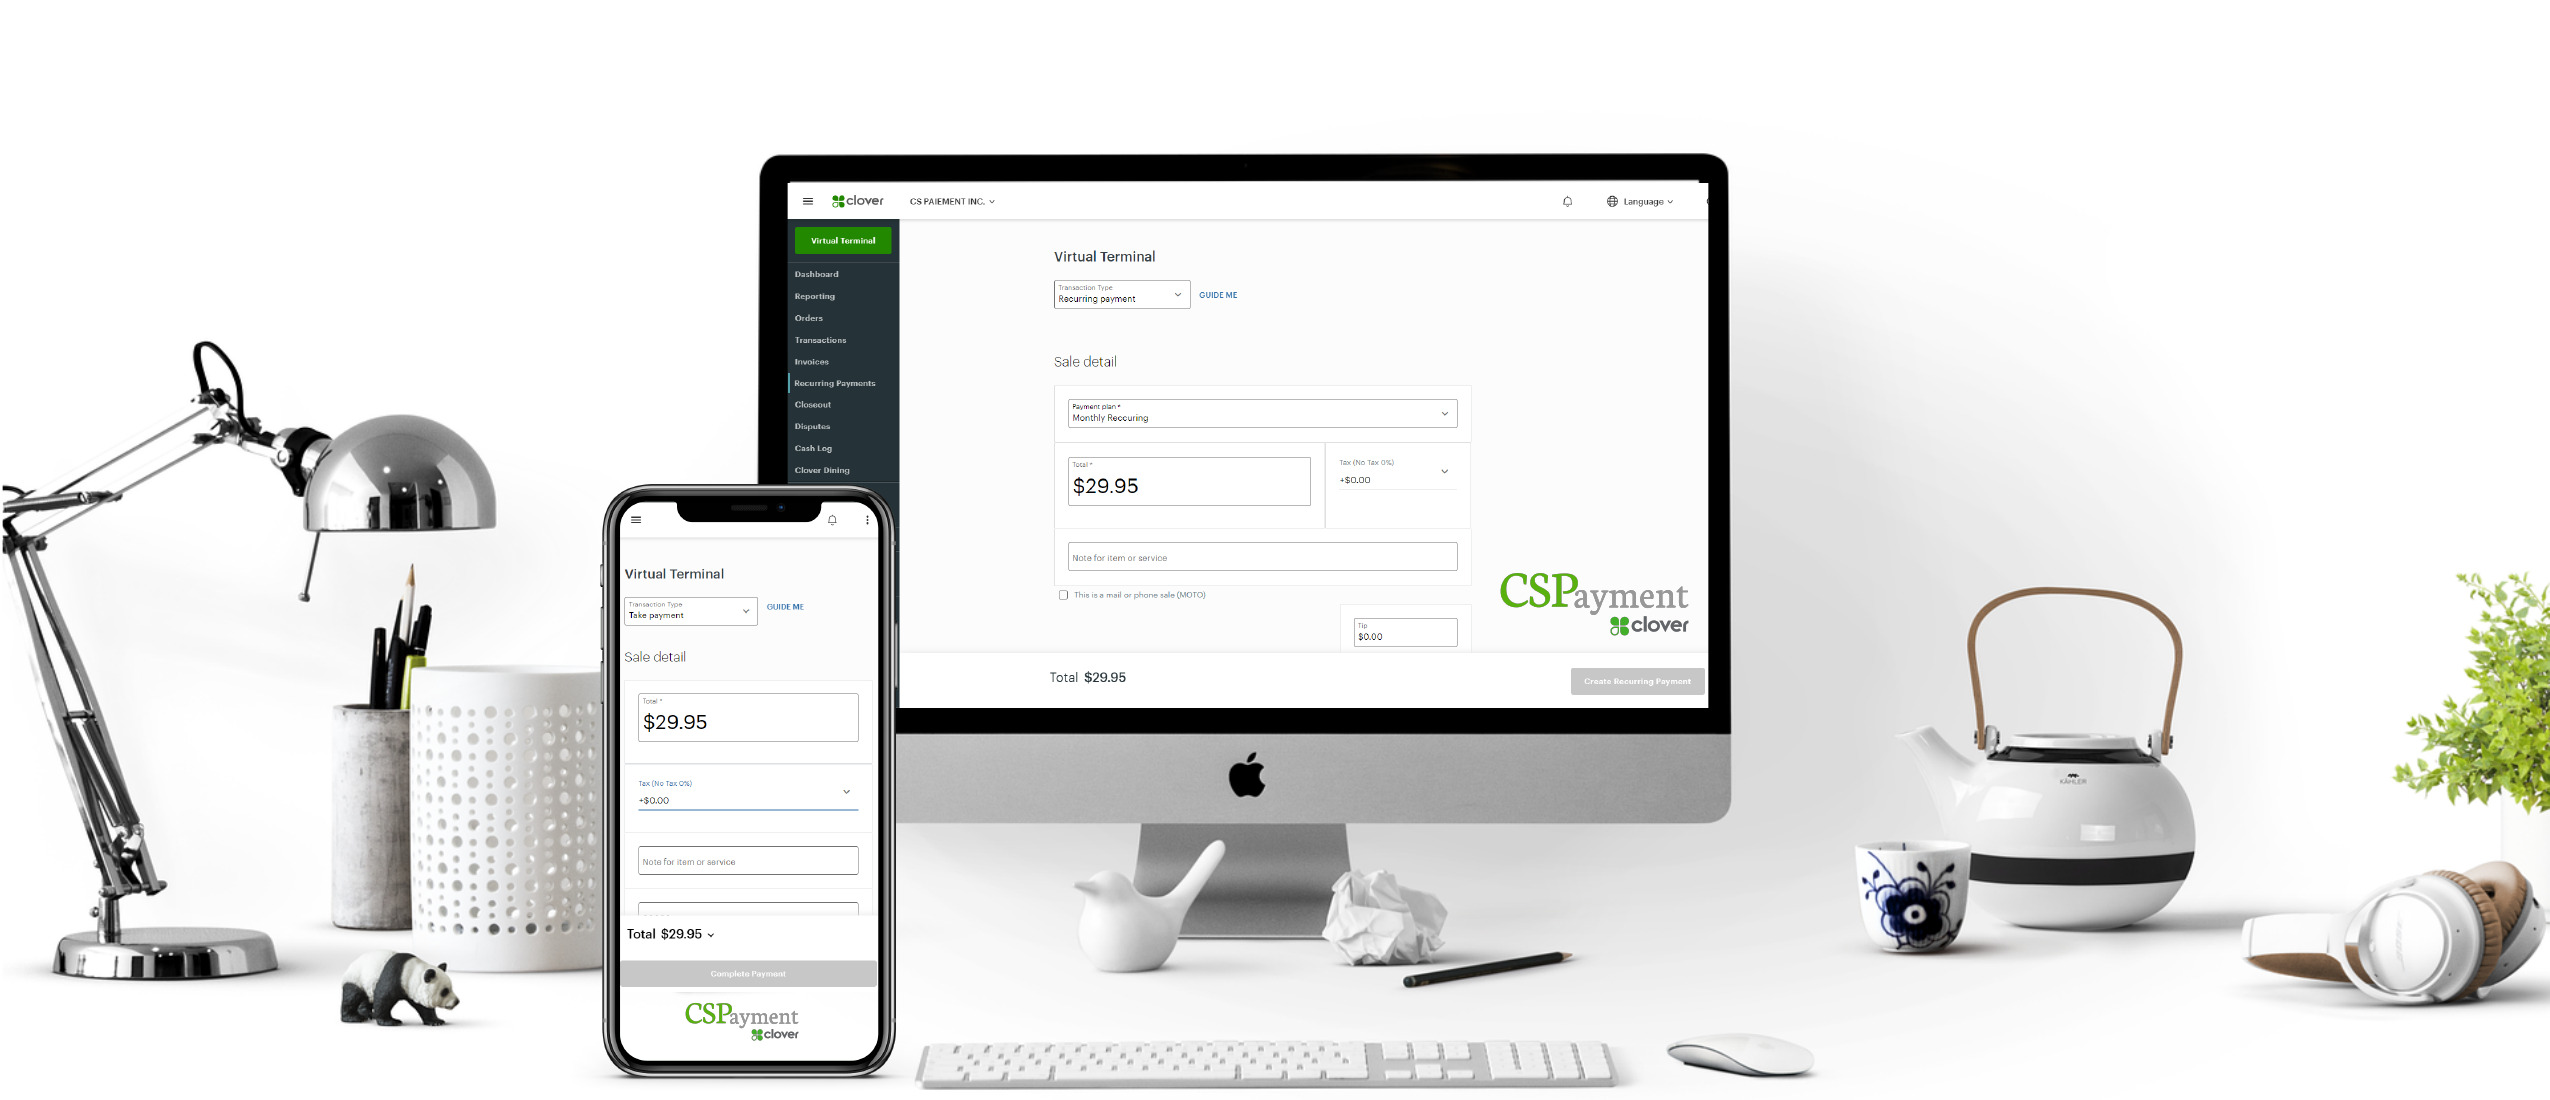 clover virtual terminal, reccuring payment